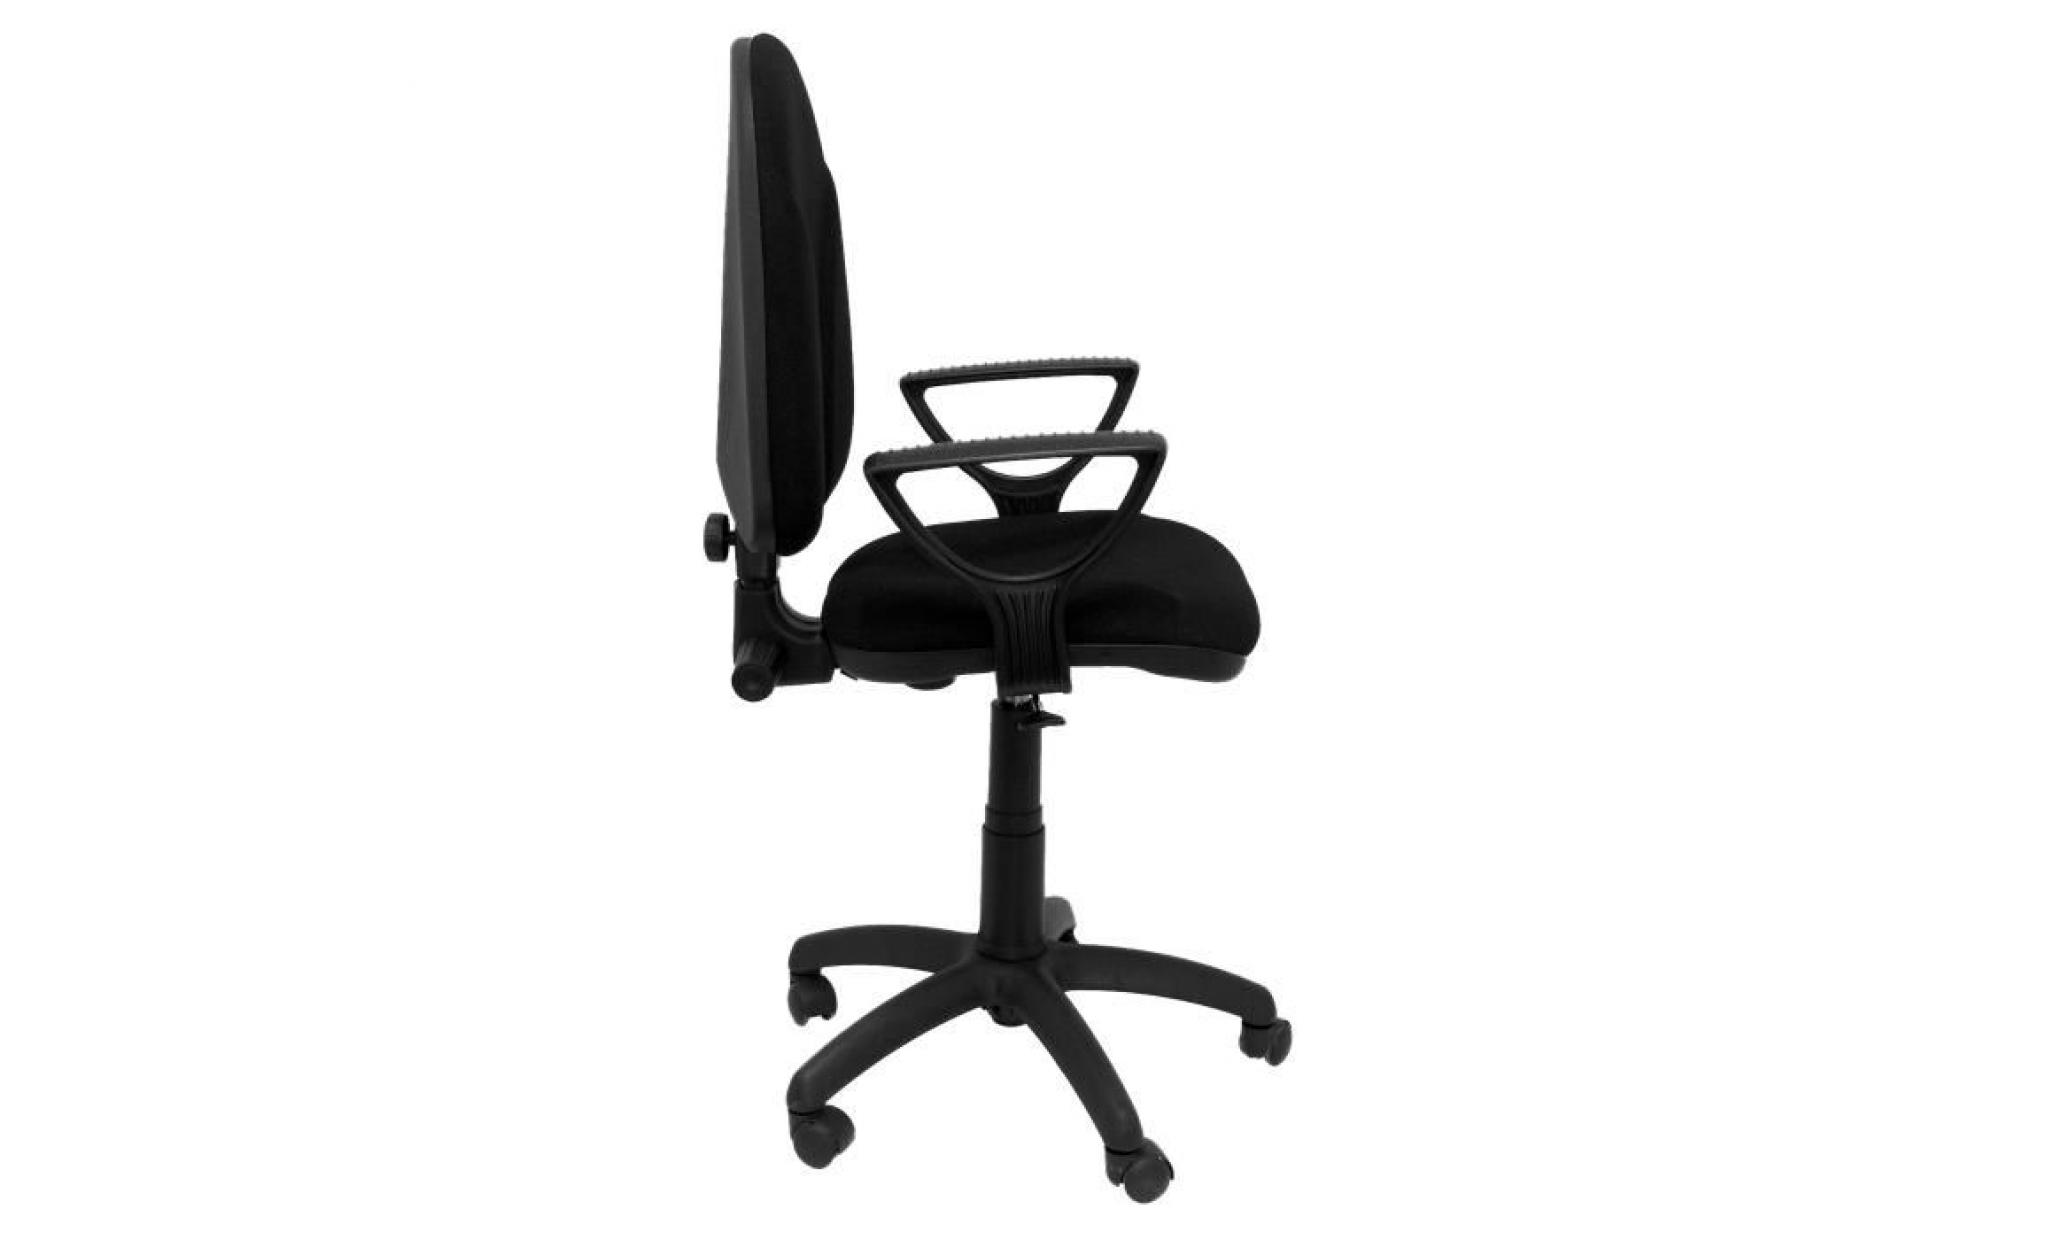 modello 1006ne algarra   sedia da ufficio ergonomica con meccanismo di contatto permanente e regolabile in altezza   sedile e pas cher